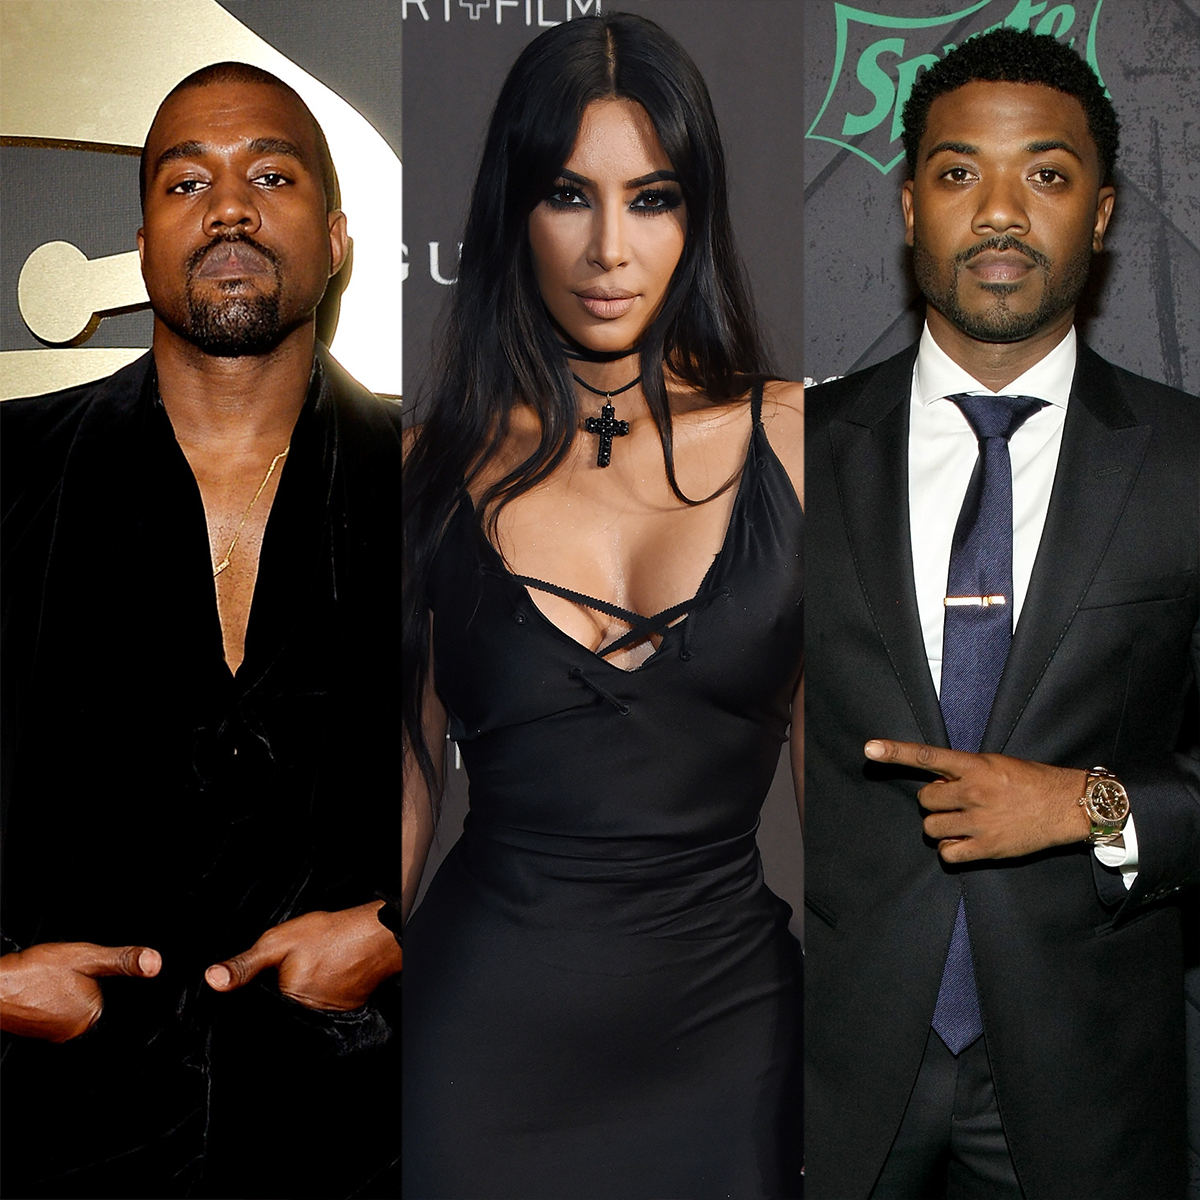 Kim Kardashian Porn Film - Kim Kardashian Responds to Ye's Claim About Second Sex Tape With Ray J - E!  Online